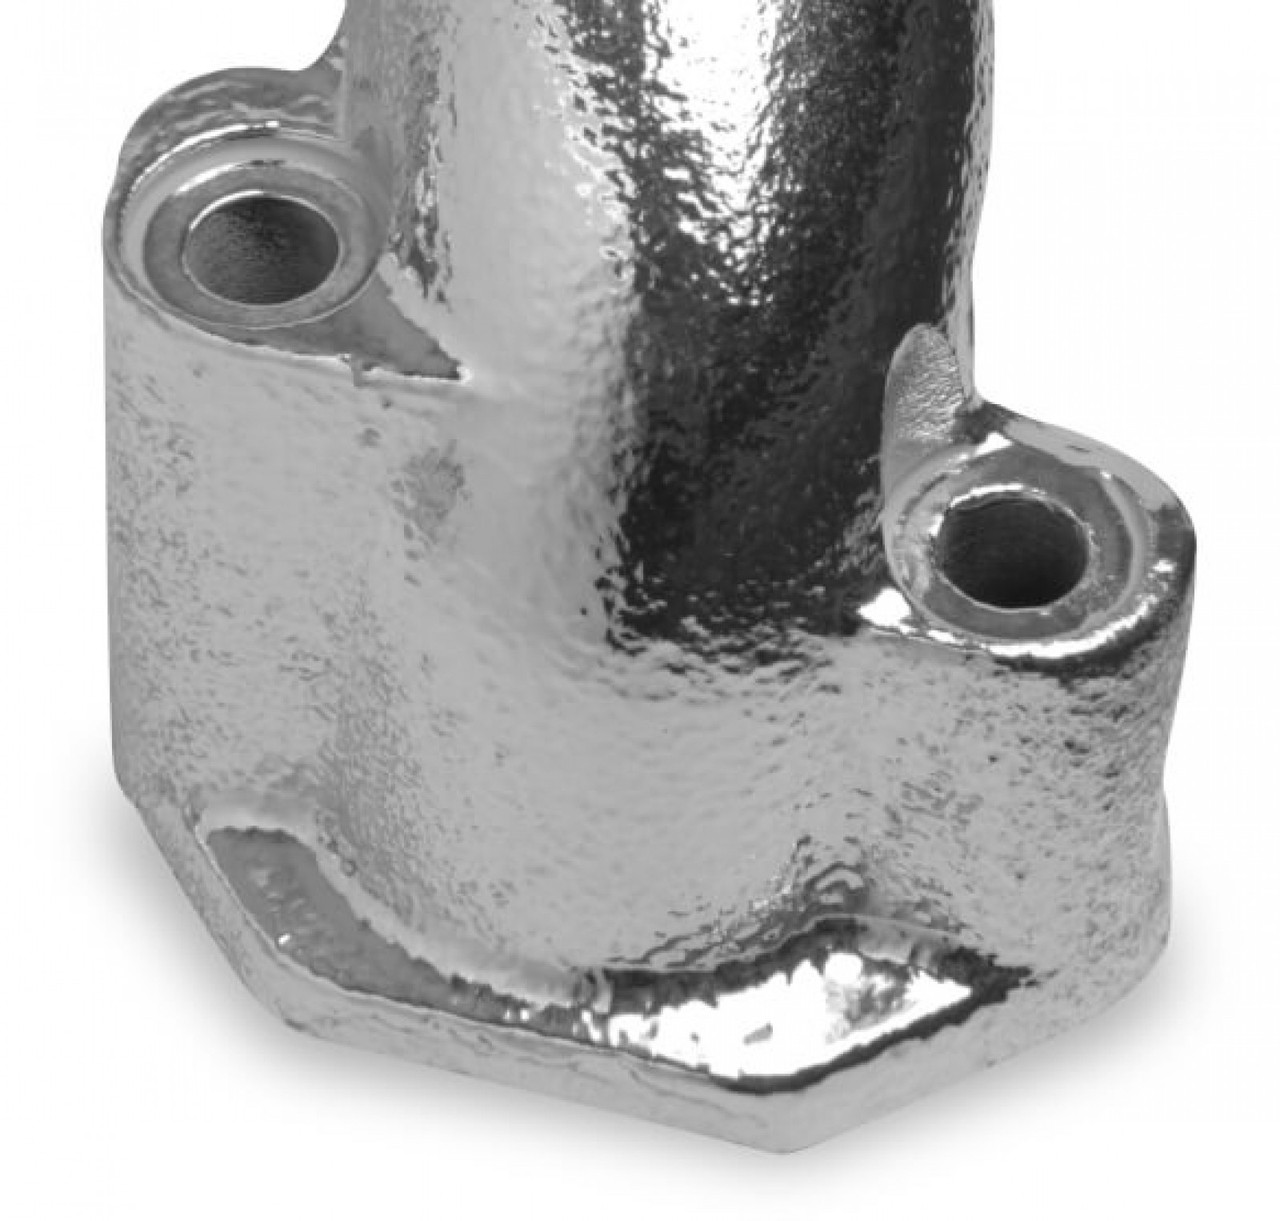 Flowtech Smallblock Chevy Ram Horn Manifold - Cer Exhaust Manifold (FLO-211704-1FLT)